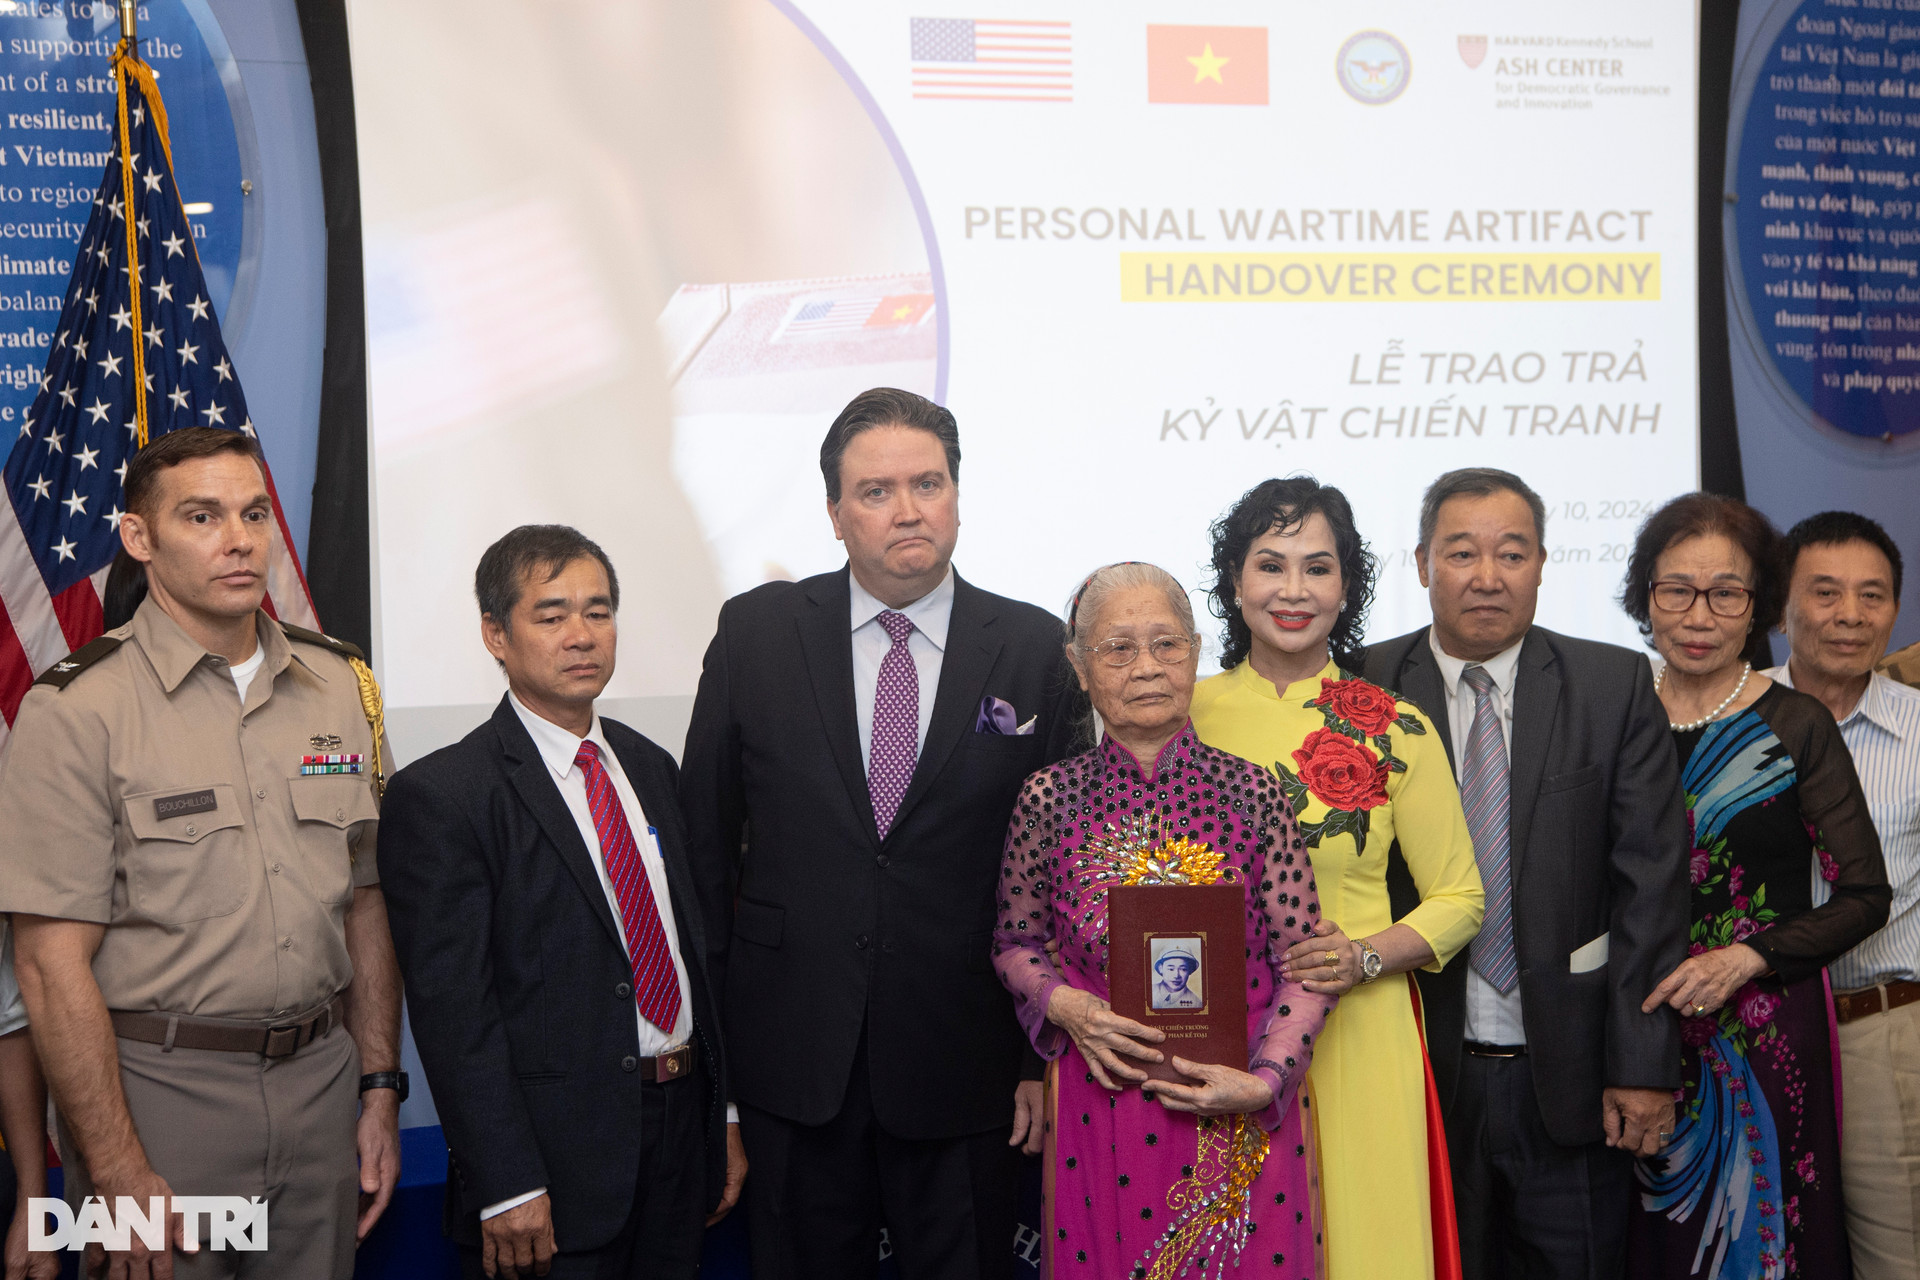 Đại sứ Mỹ chia sẻ khoảnh khắc xúc động khi trao trả kỷ vật chiến tranh - 3